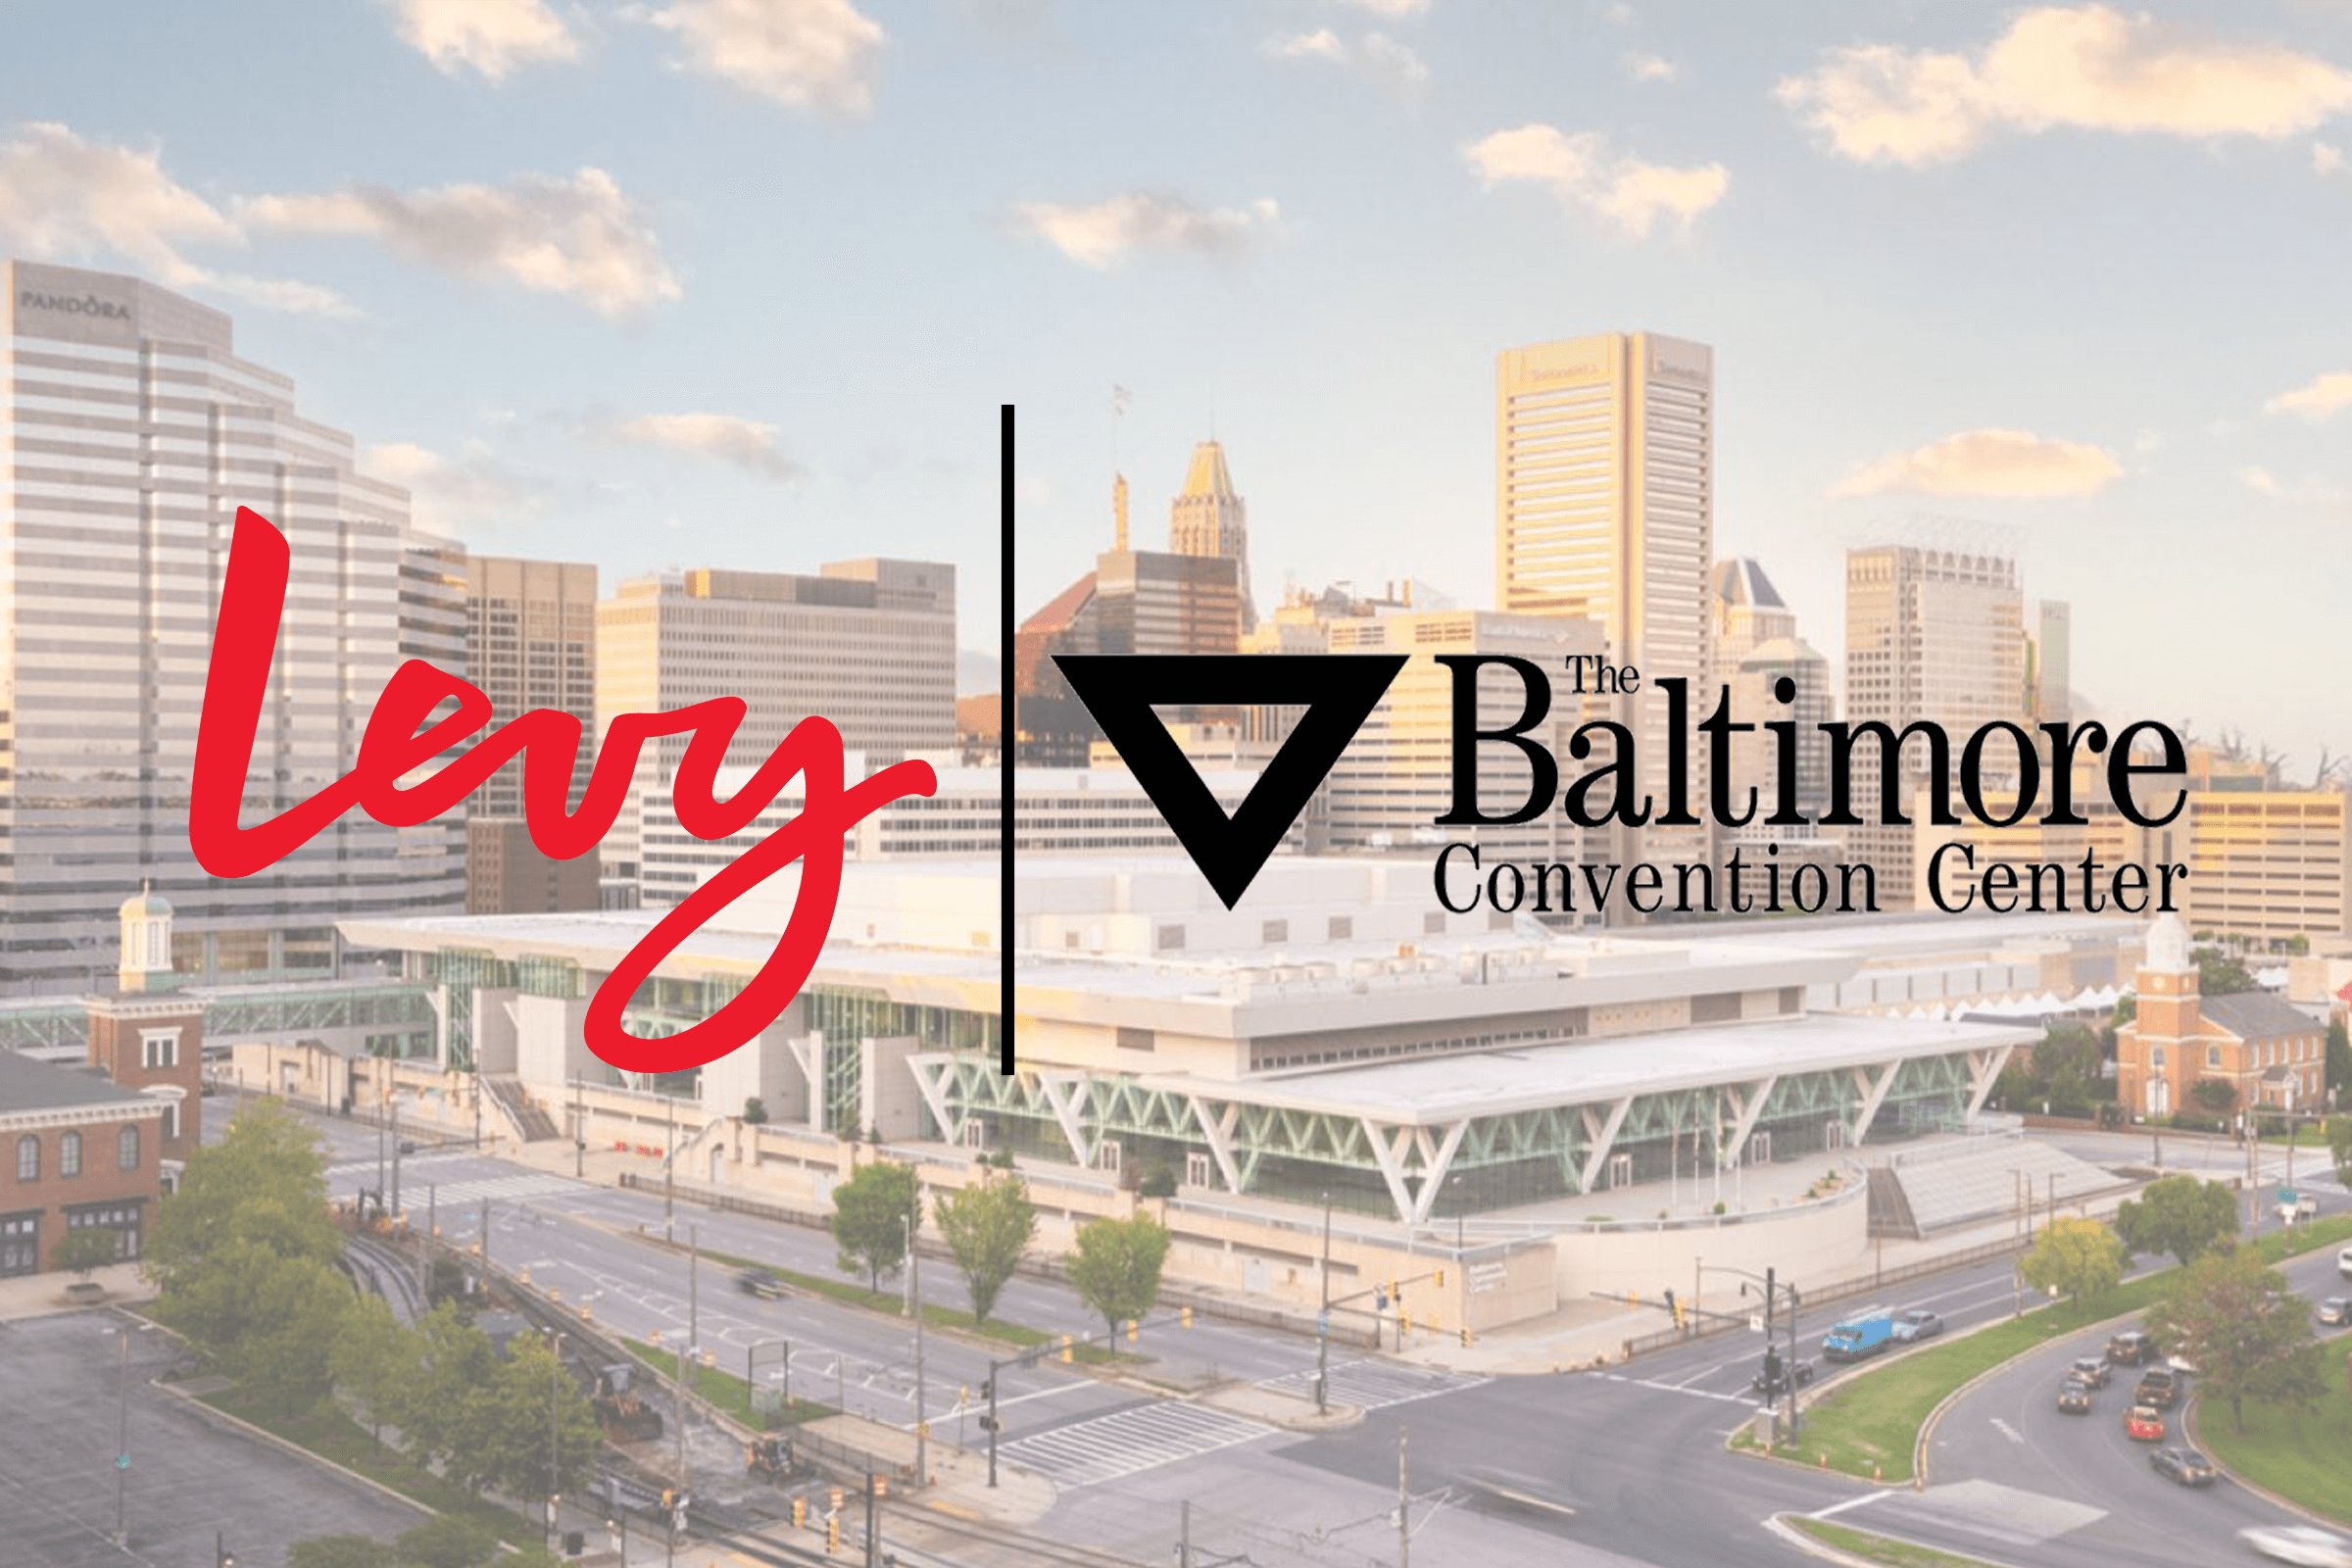 Levy logo next to Baltimore Convention Center logo